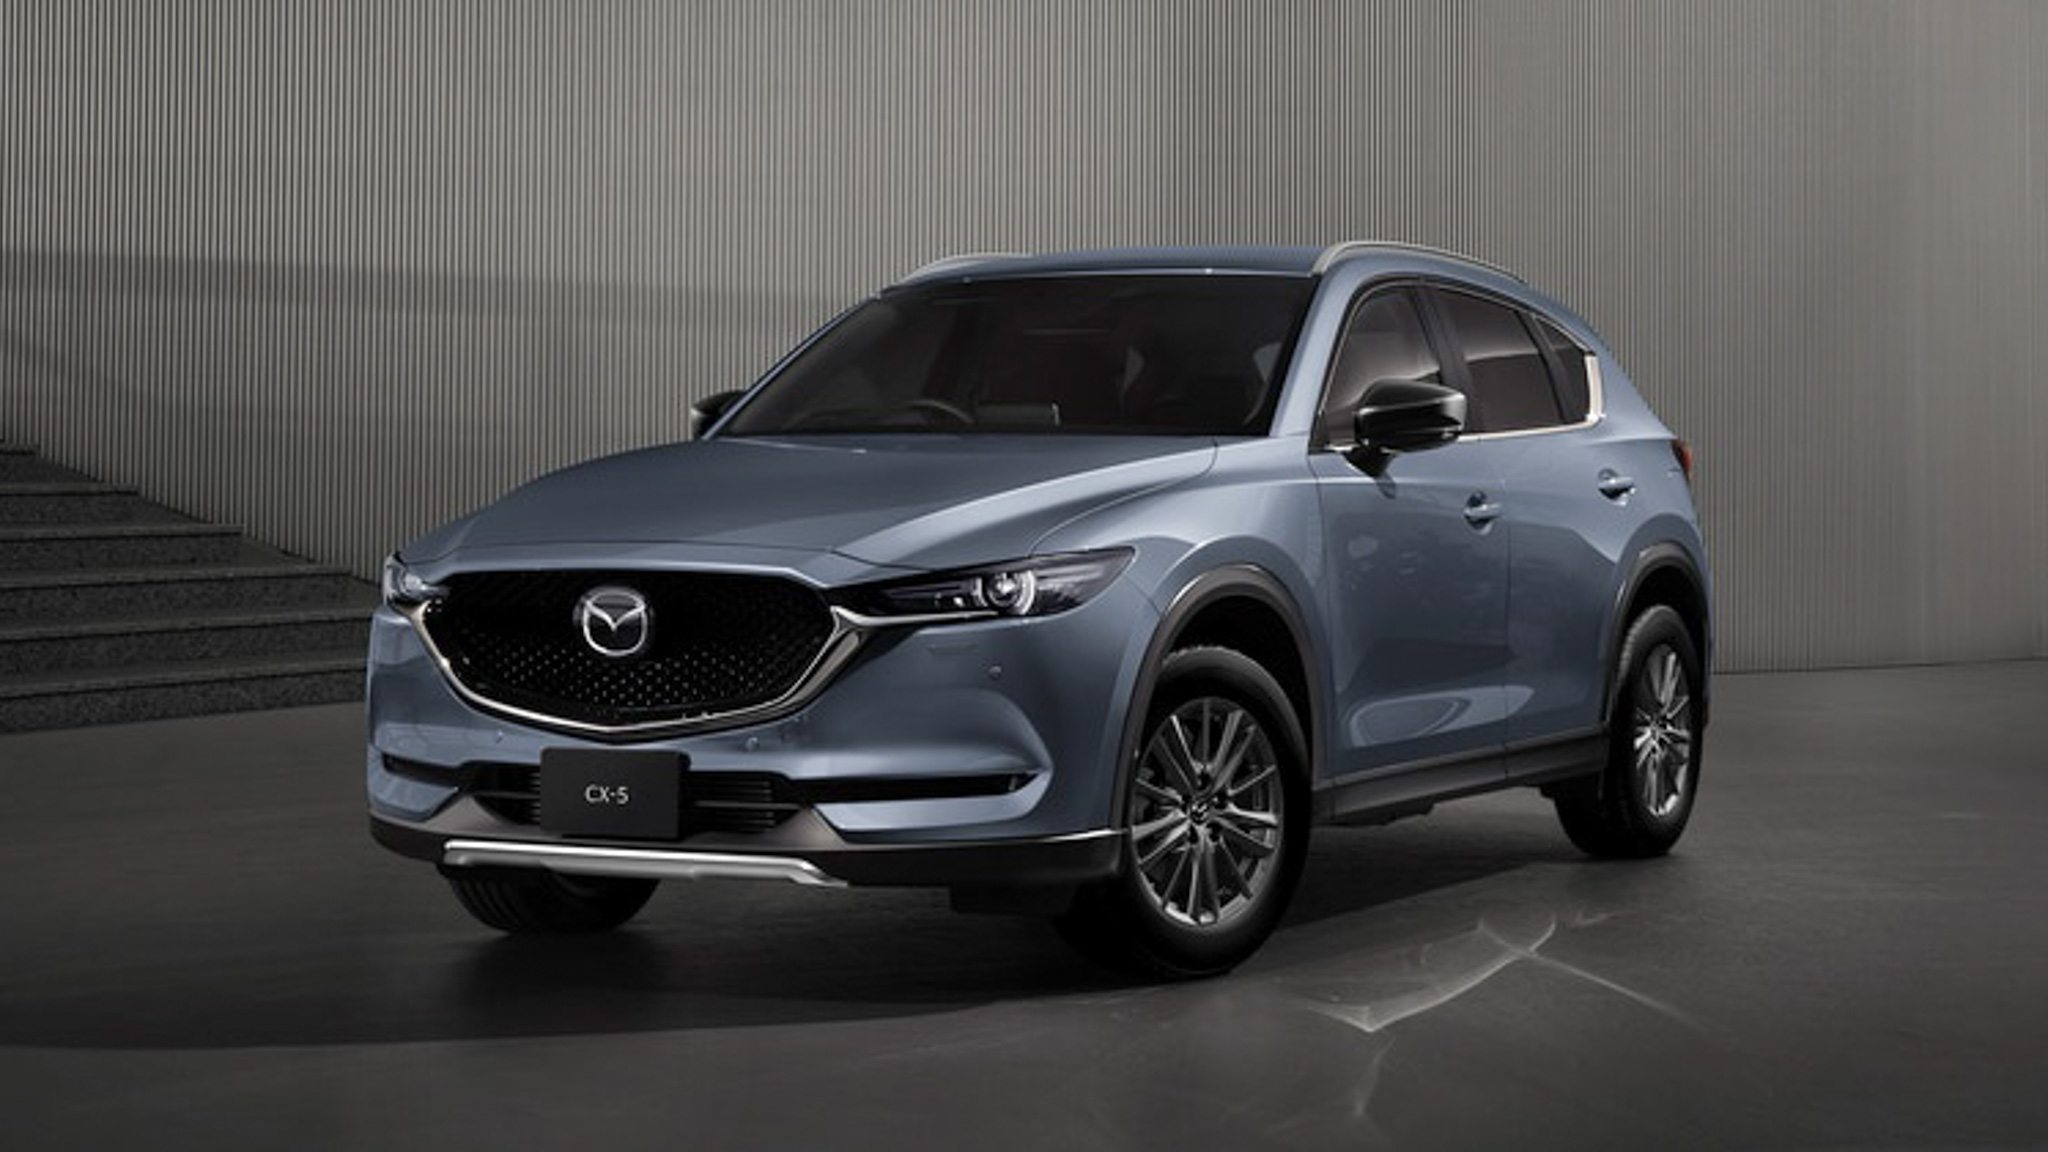 Mazda CX5 dẫn đầu phân khúc SUV cỡ trung năm 2020